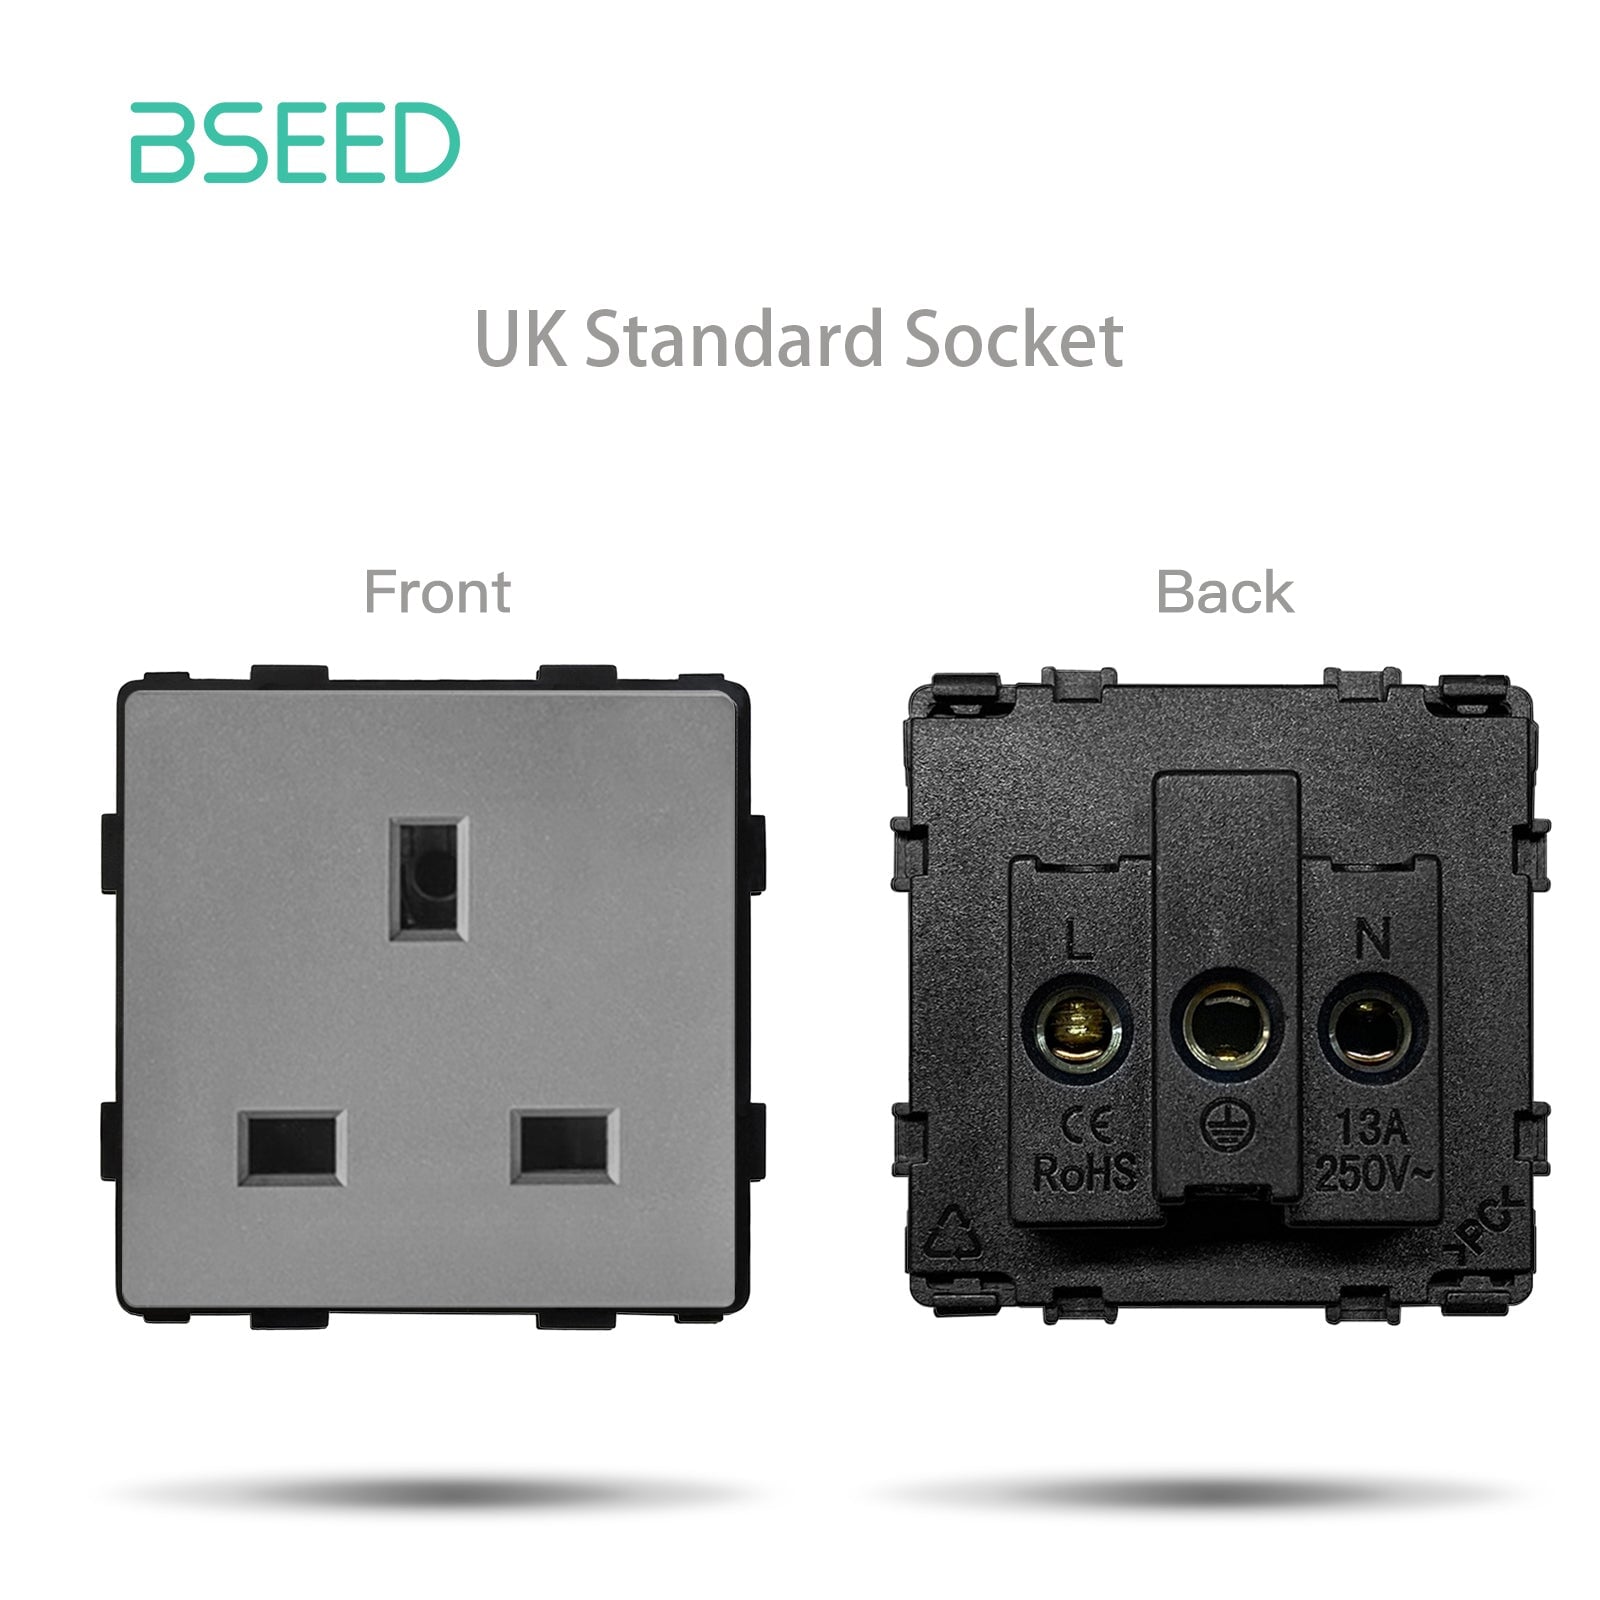 BSEED EU/FR/ UK/MF Standard Wall Socket Function Key Touch WiFi Zigbee type Power Outlets & Sockets Bseedswitch Black UK Touch